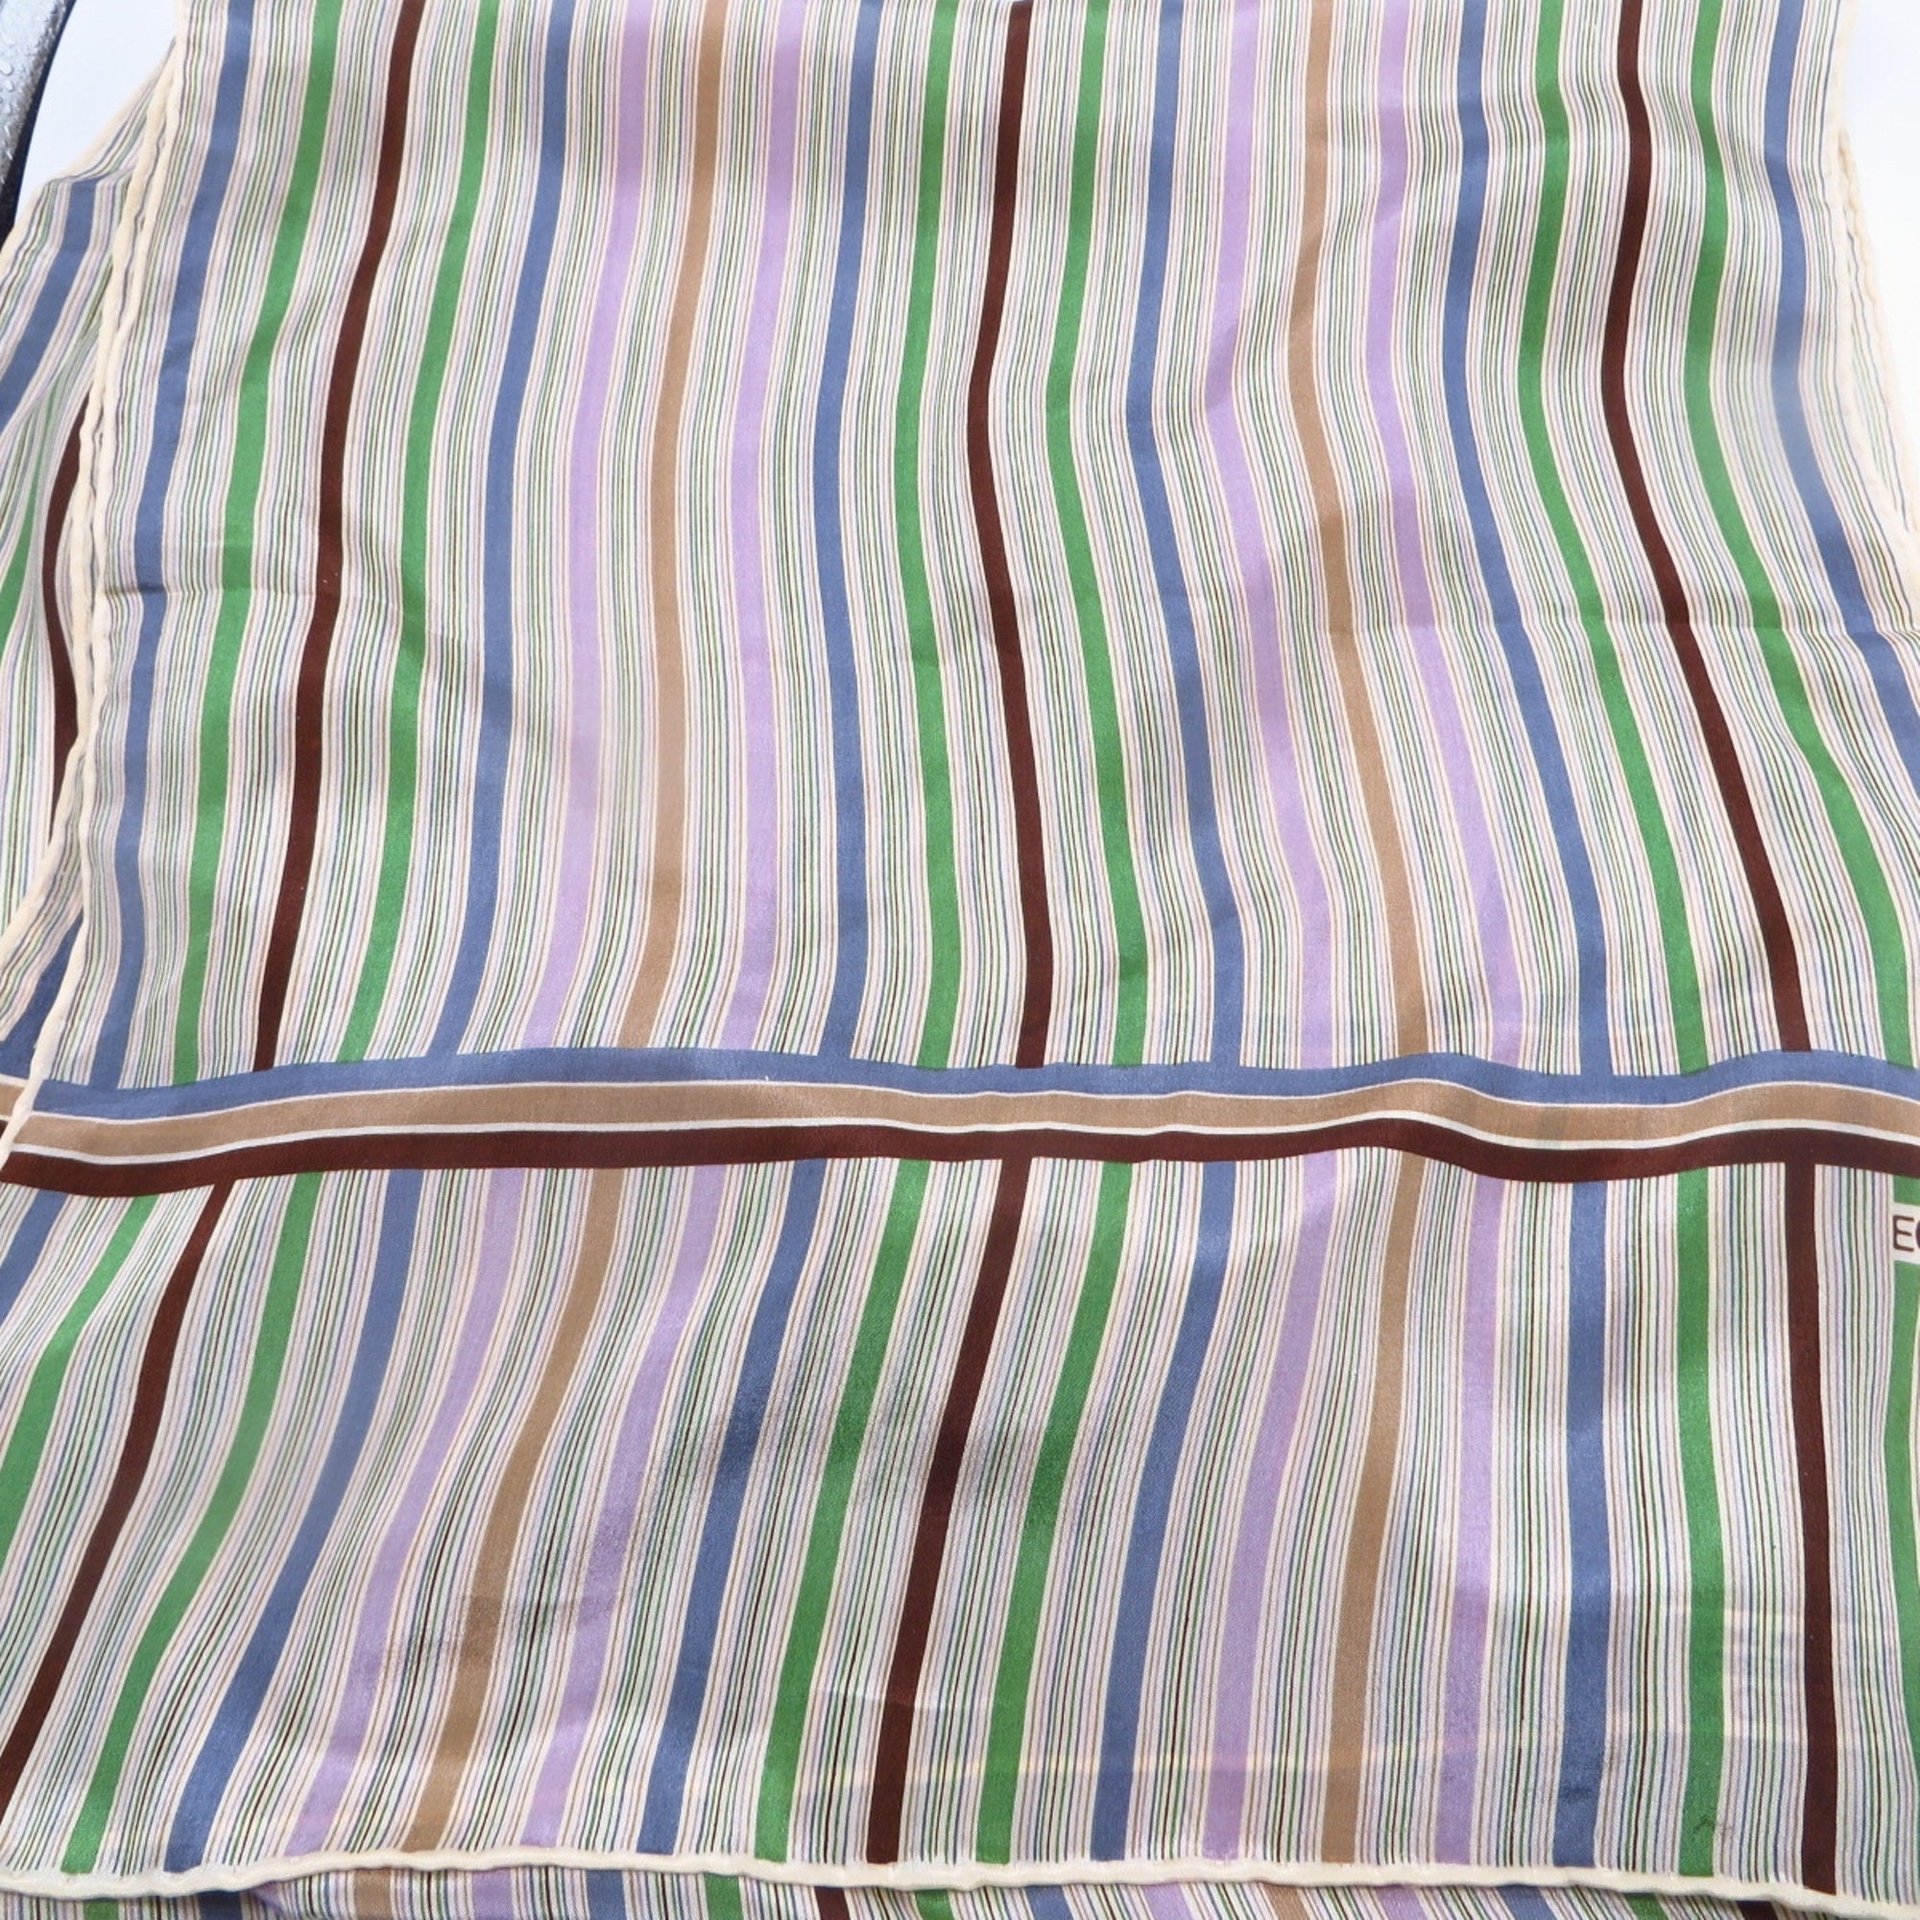 ECHO Silk Scarf, Pastel Striped 64 Inch Length Scarf or Sash